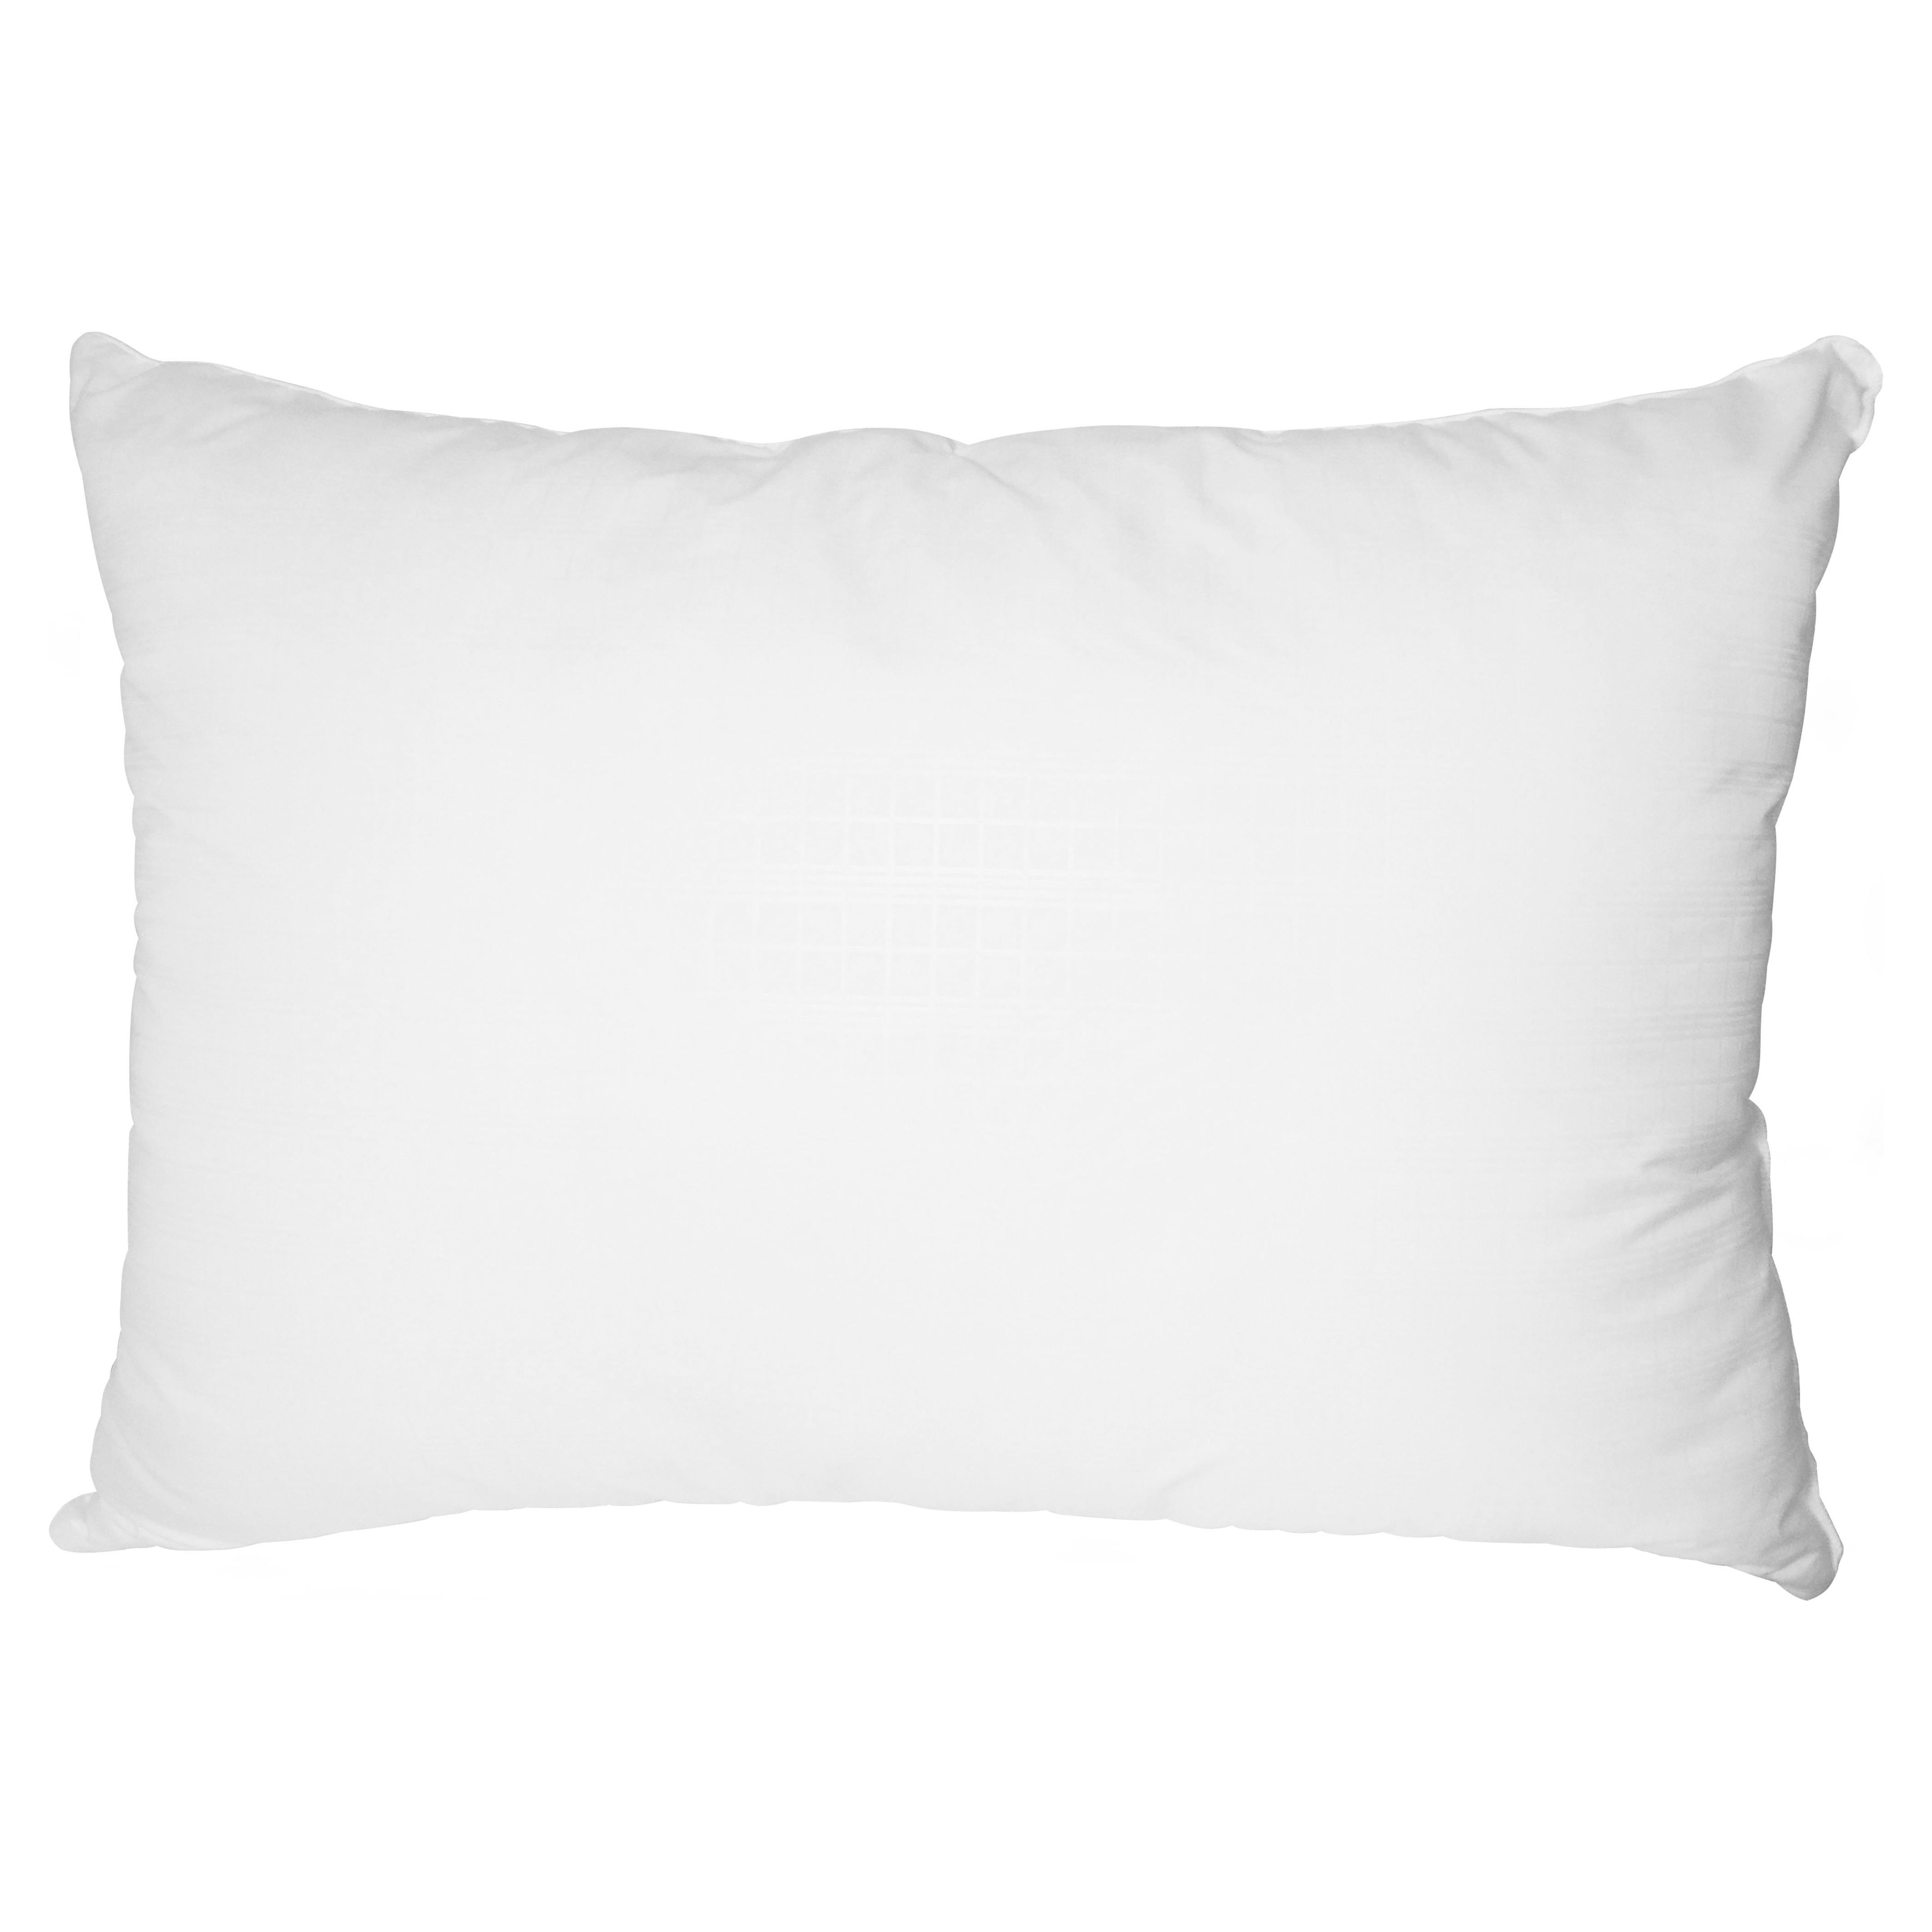 Mainstays Comfort Complete Bed Pillow, Standard/Queen - image 3 of 5